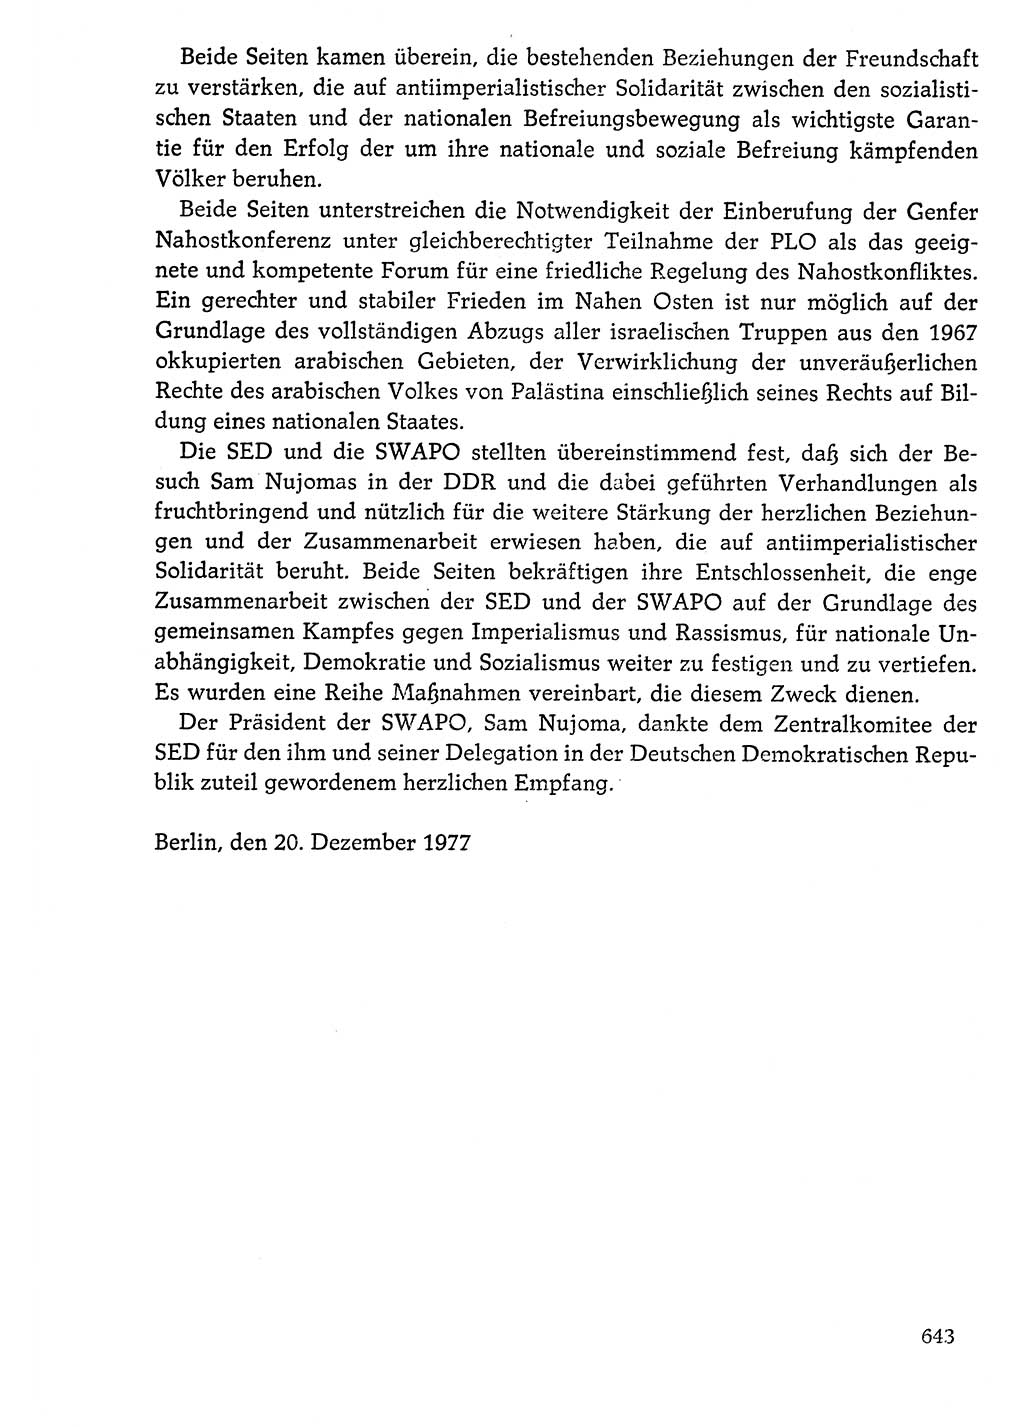 Dokumente der Sozialistischen Einheitspartei Deutschlands (SED) [Deutsche Demokratische Republik (DDR)] 1976-1977, Seite 643 (Dok. SED DDR 1976-1977, S. 643)